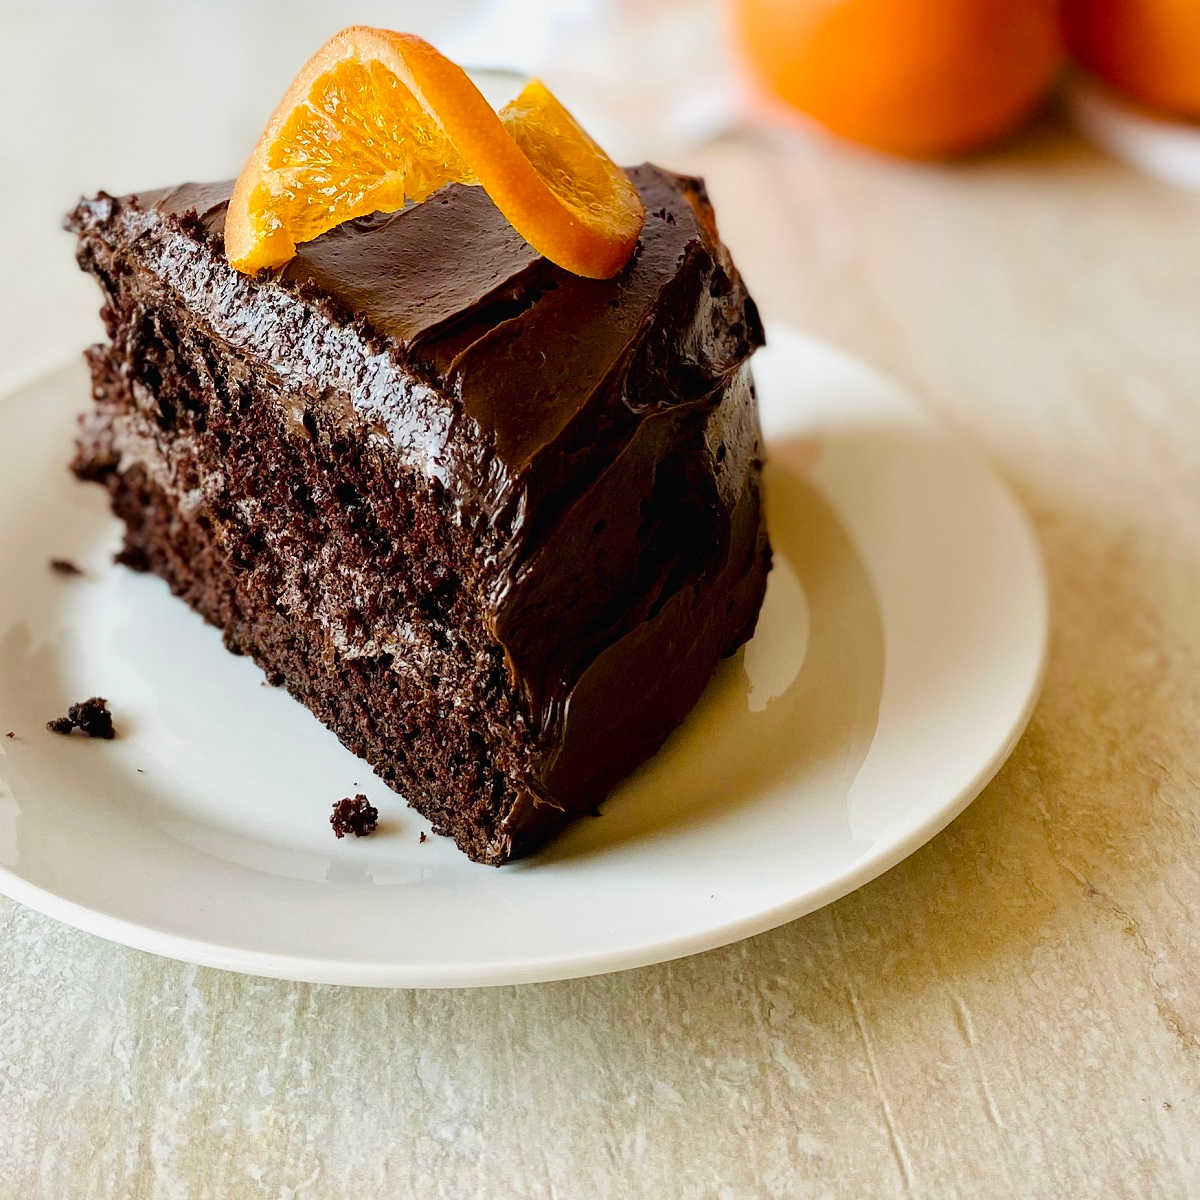 Orange cake recipe